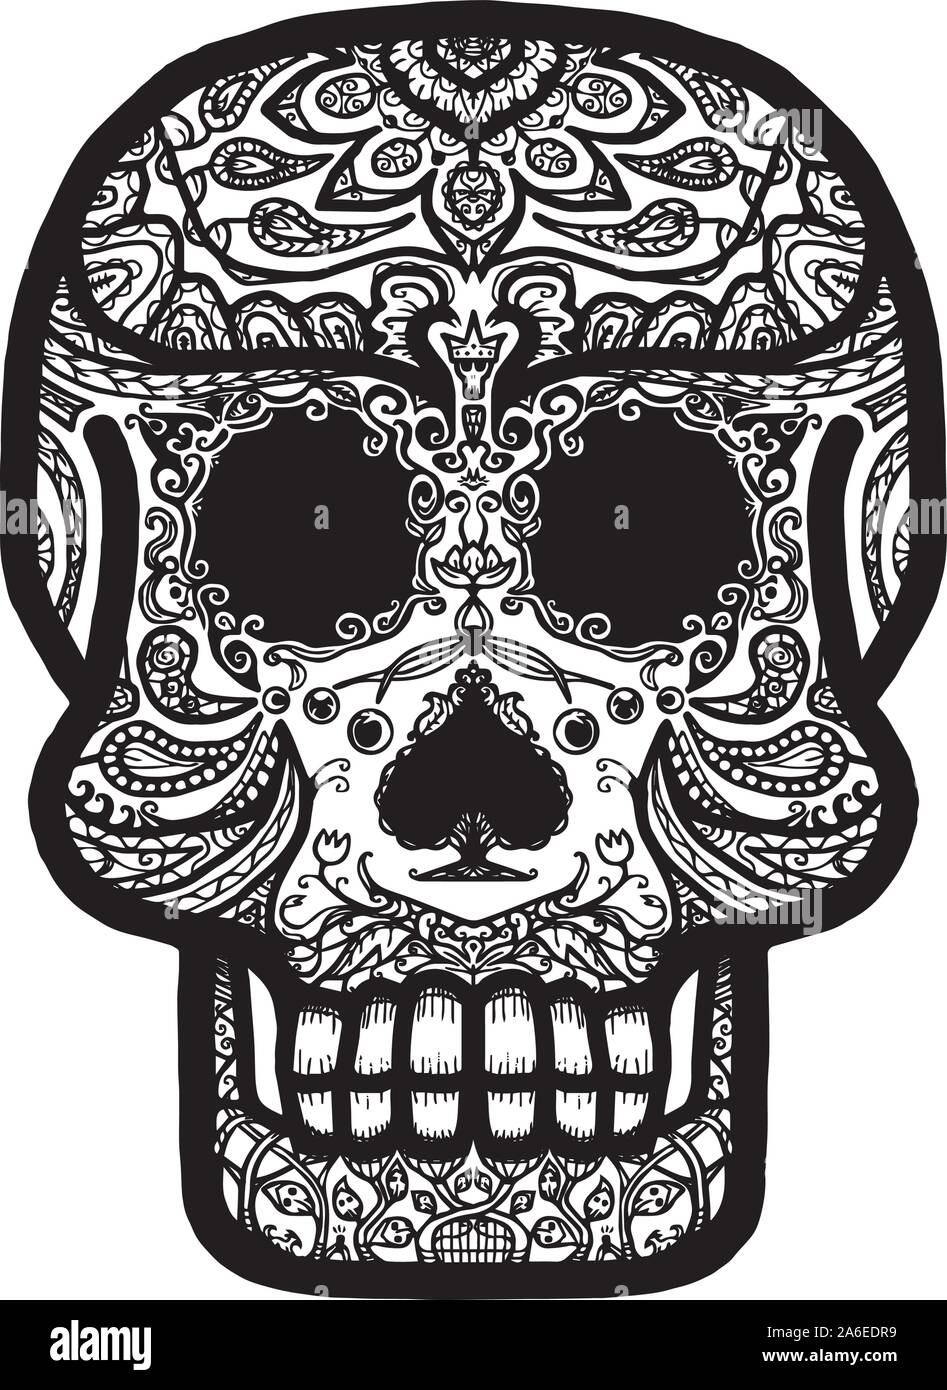 Calavera messicana cranio - dia de muertos Illustrazione Vettoriale